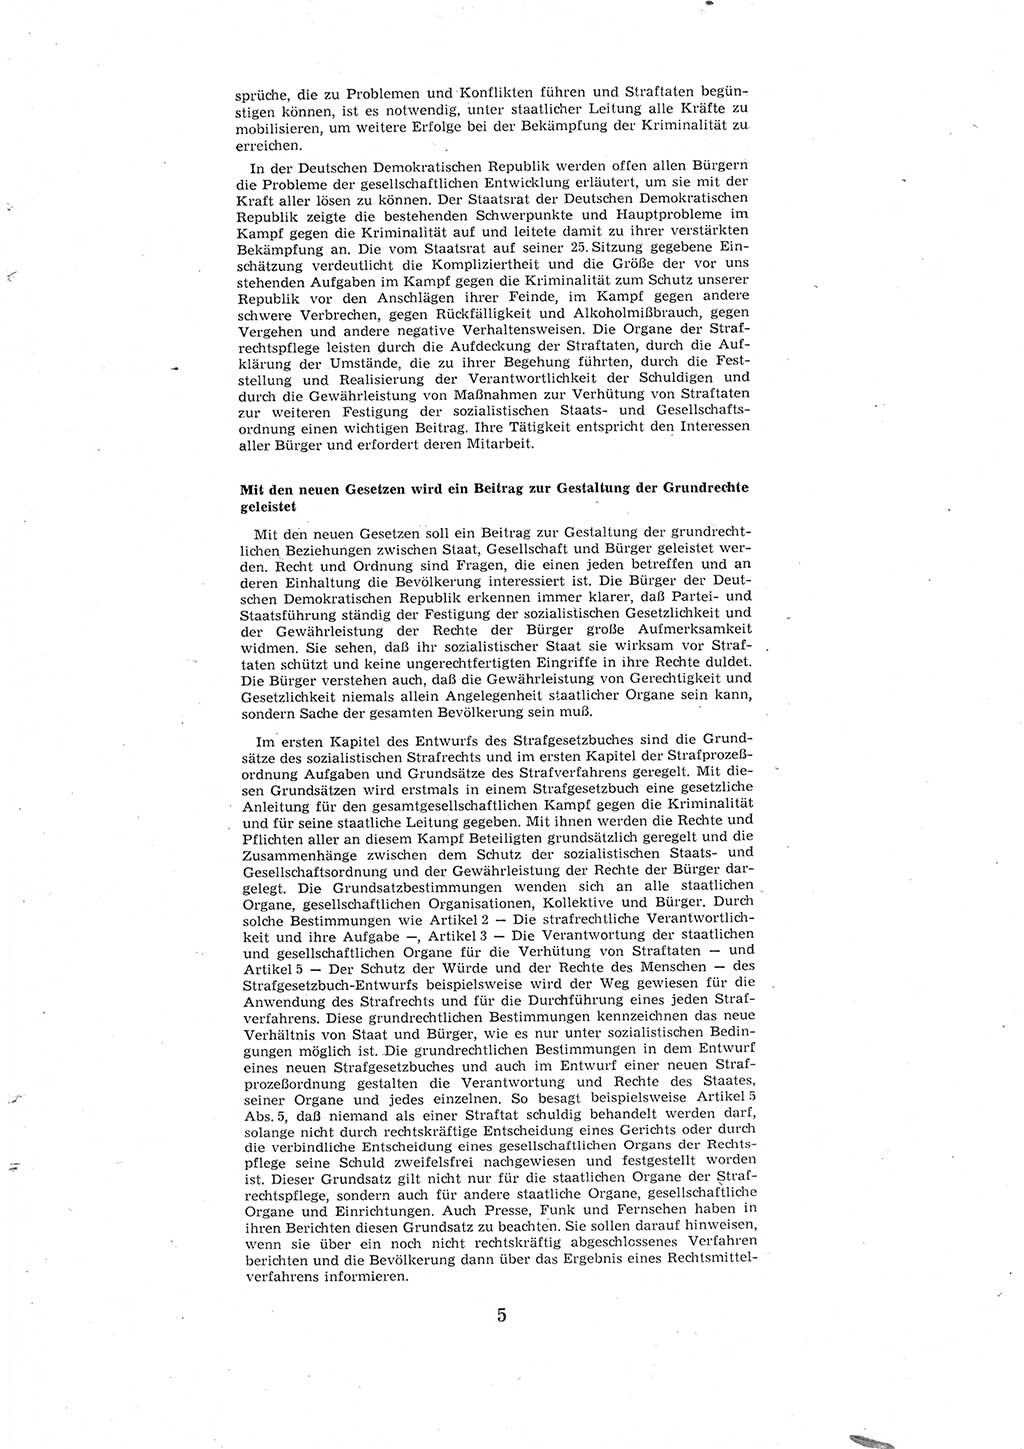 Entwurf des Strafgesetzbuches (StGB) der Deutschen Demokratischen Republik (DDR) 1967, Seite 5 (Entw. StGB DDR 1967, S. 5)